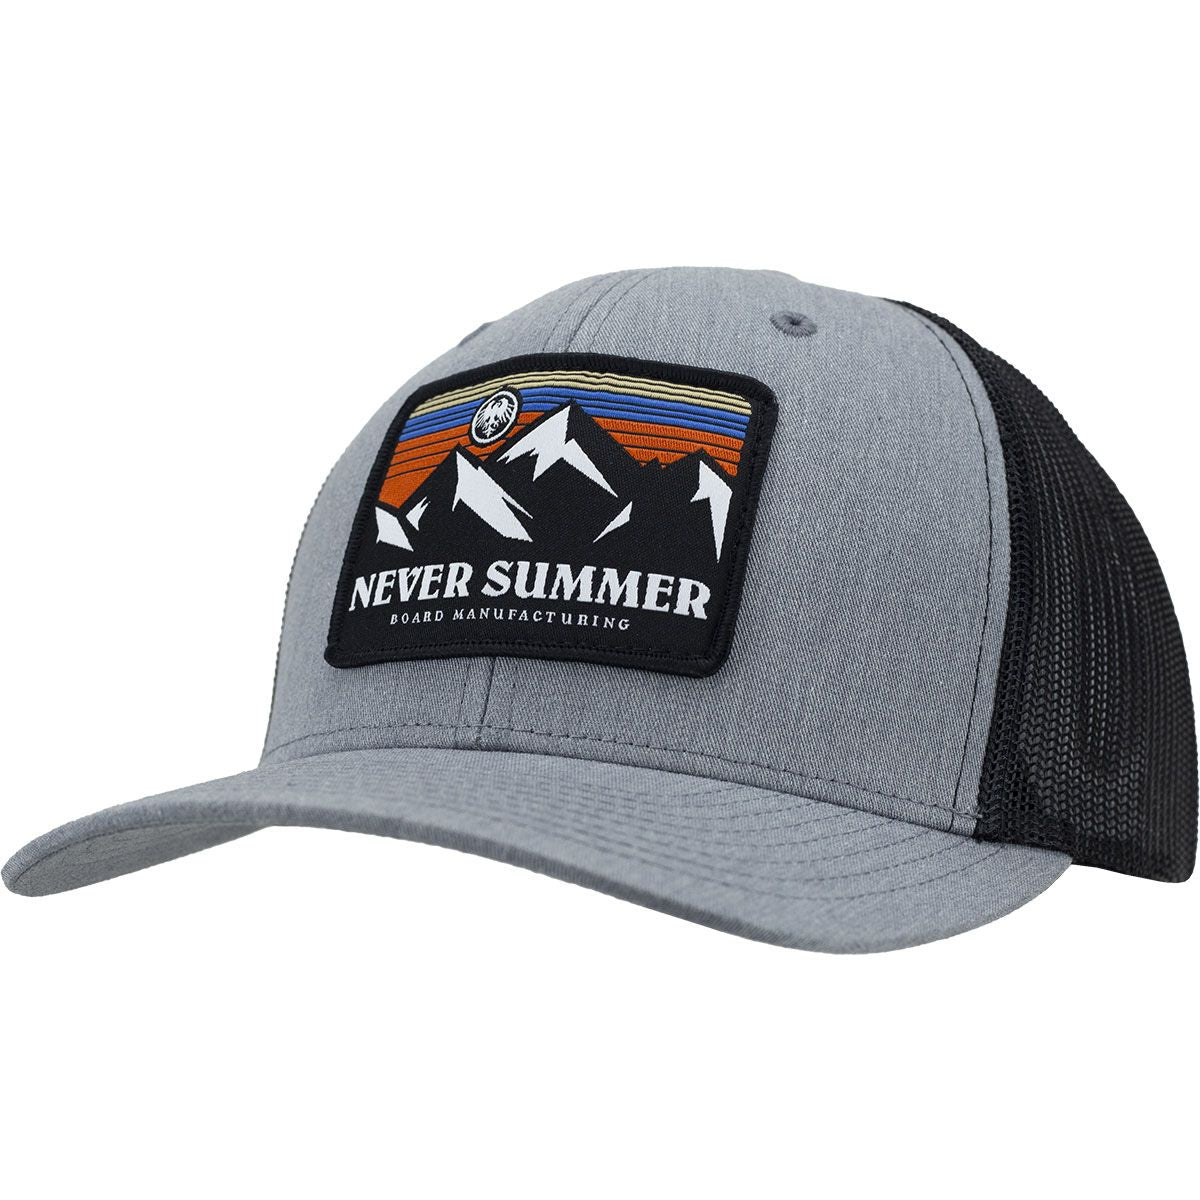 Never Summer 24 Retro Sunset Trucker